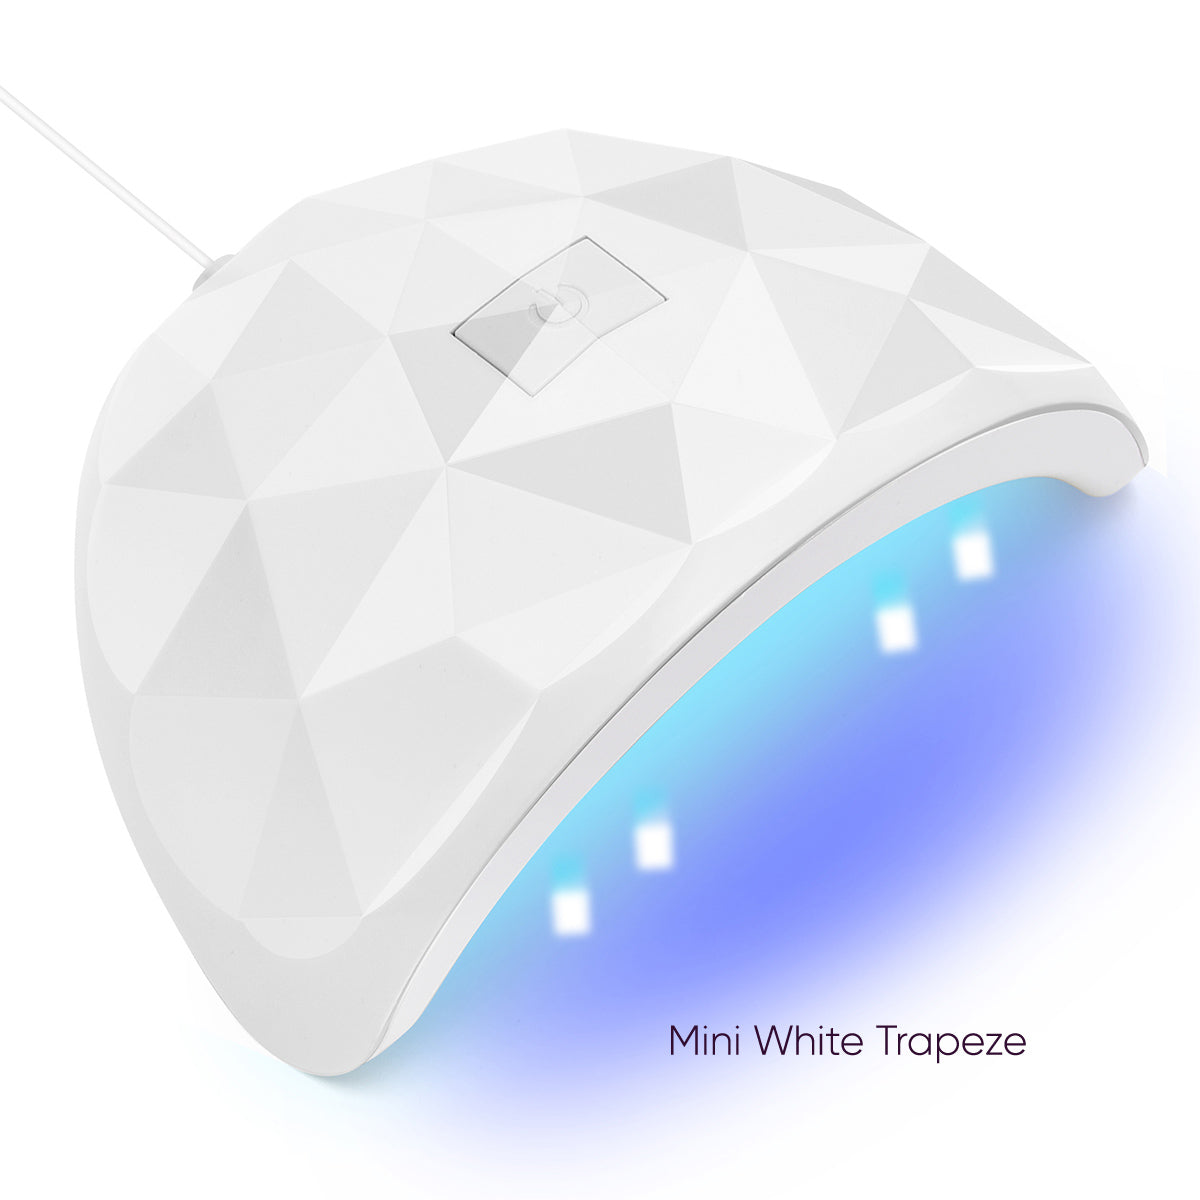 Trapeze UV LED 88W Curing Lamp MINI802-WHITE